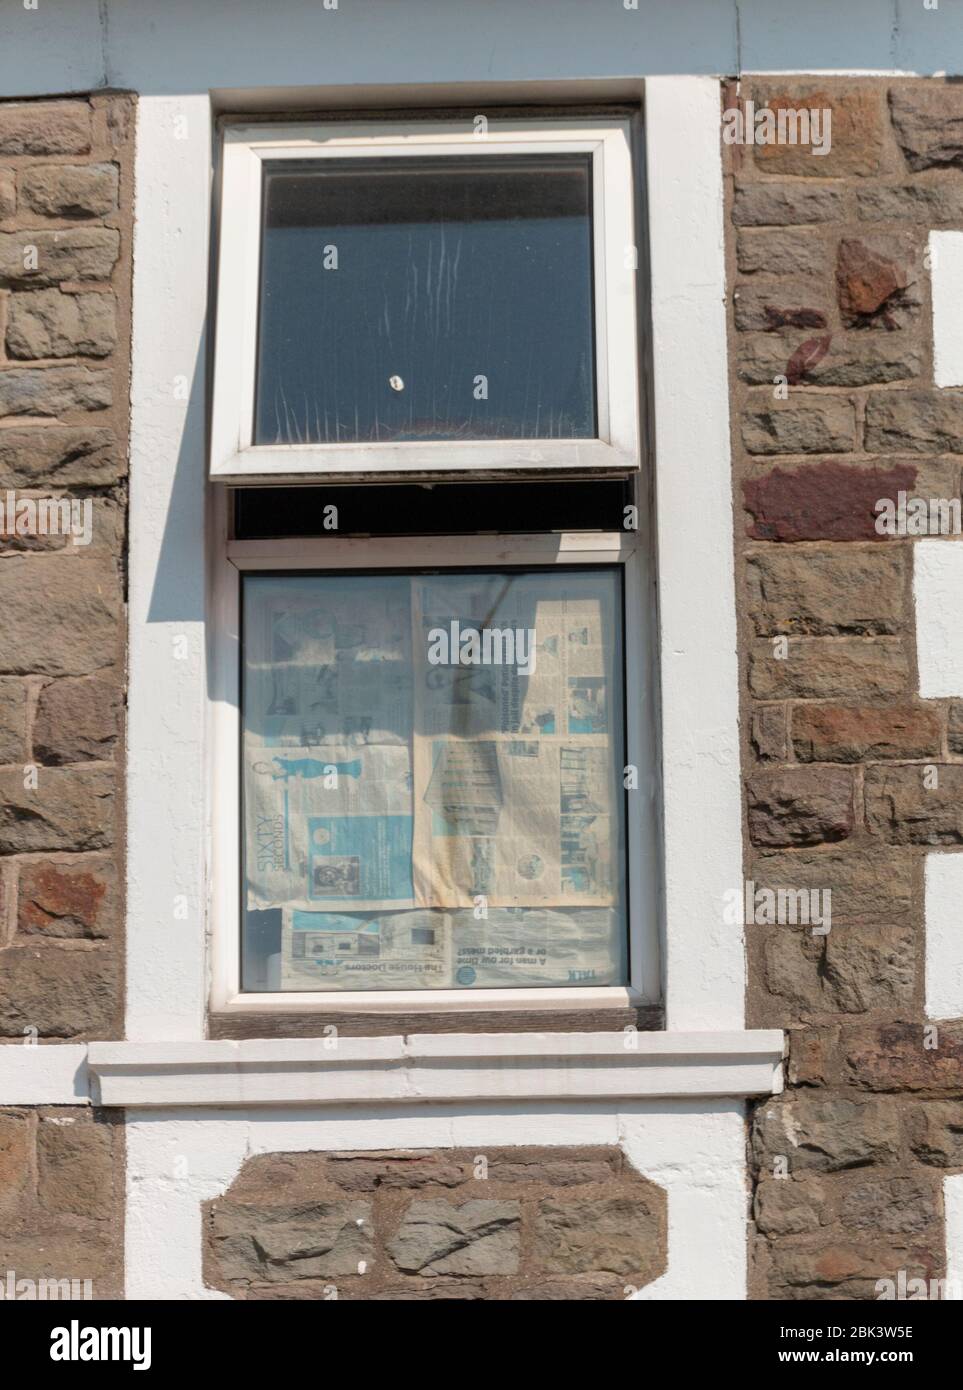 Bristol-April 2020- England-eine Nahaufnahme eines kleinen Fensters, in dem die Zeitung am unteren Teil festgeklebt ist Stockfoto